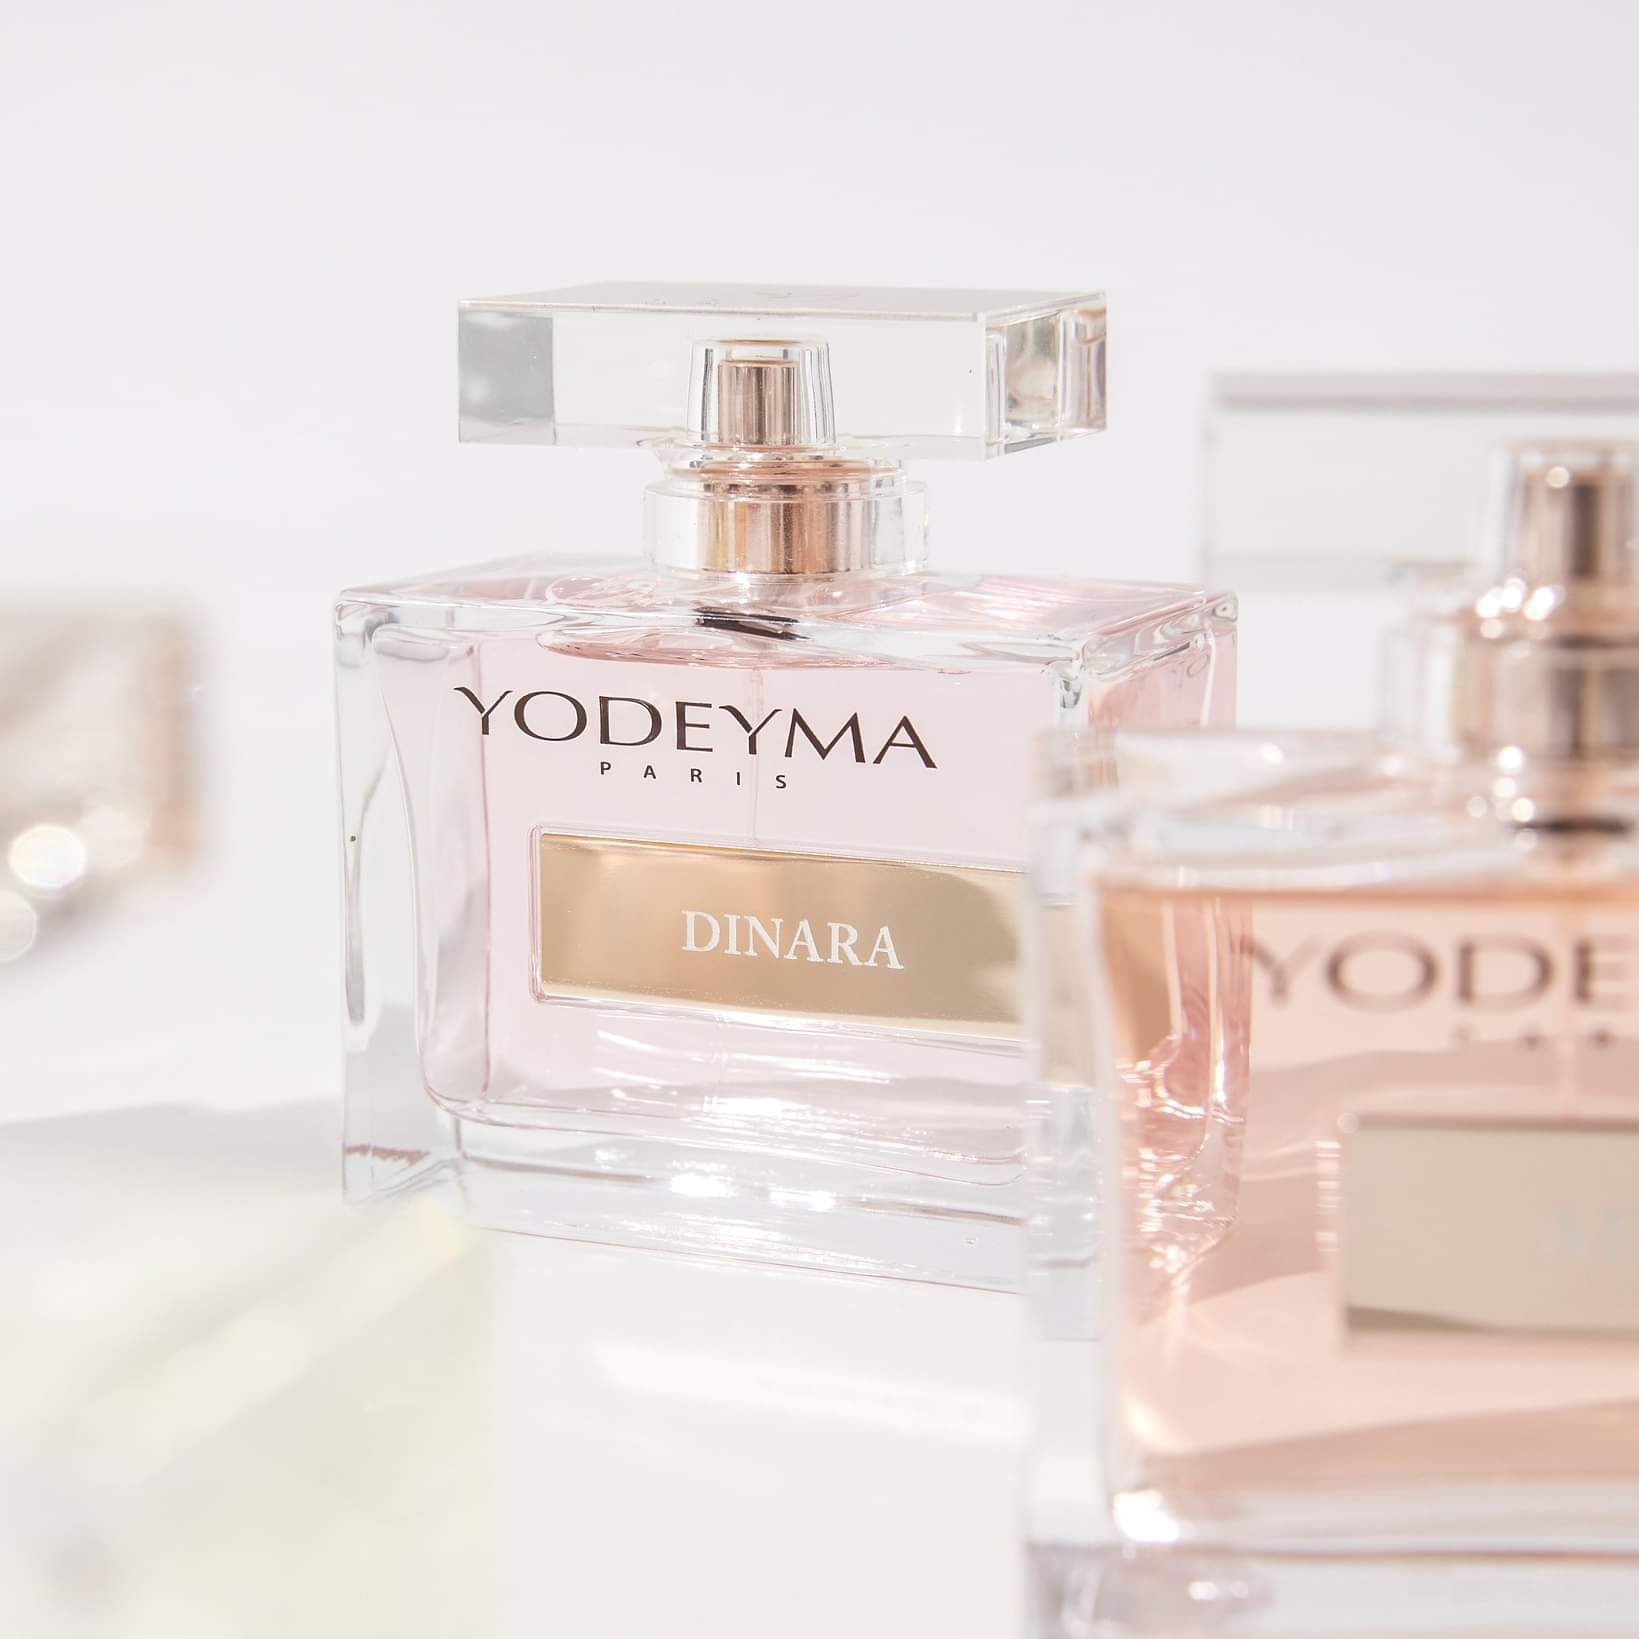 Yodeyma, storia di un nuovo ecommerce, nato per la vendita di profumi yodeyma online ed arricchito con tante altre linee di cosmetica